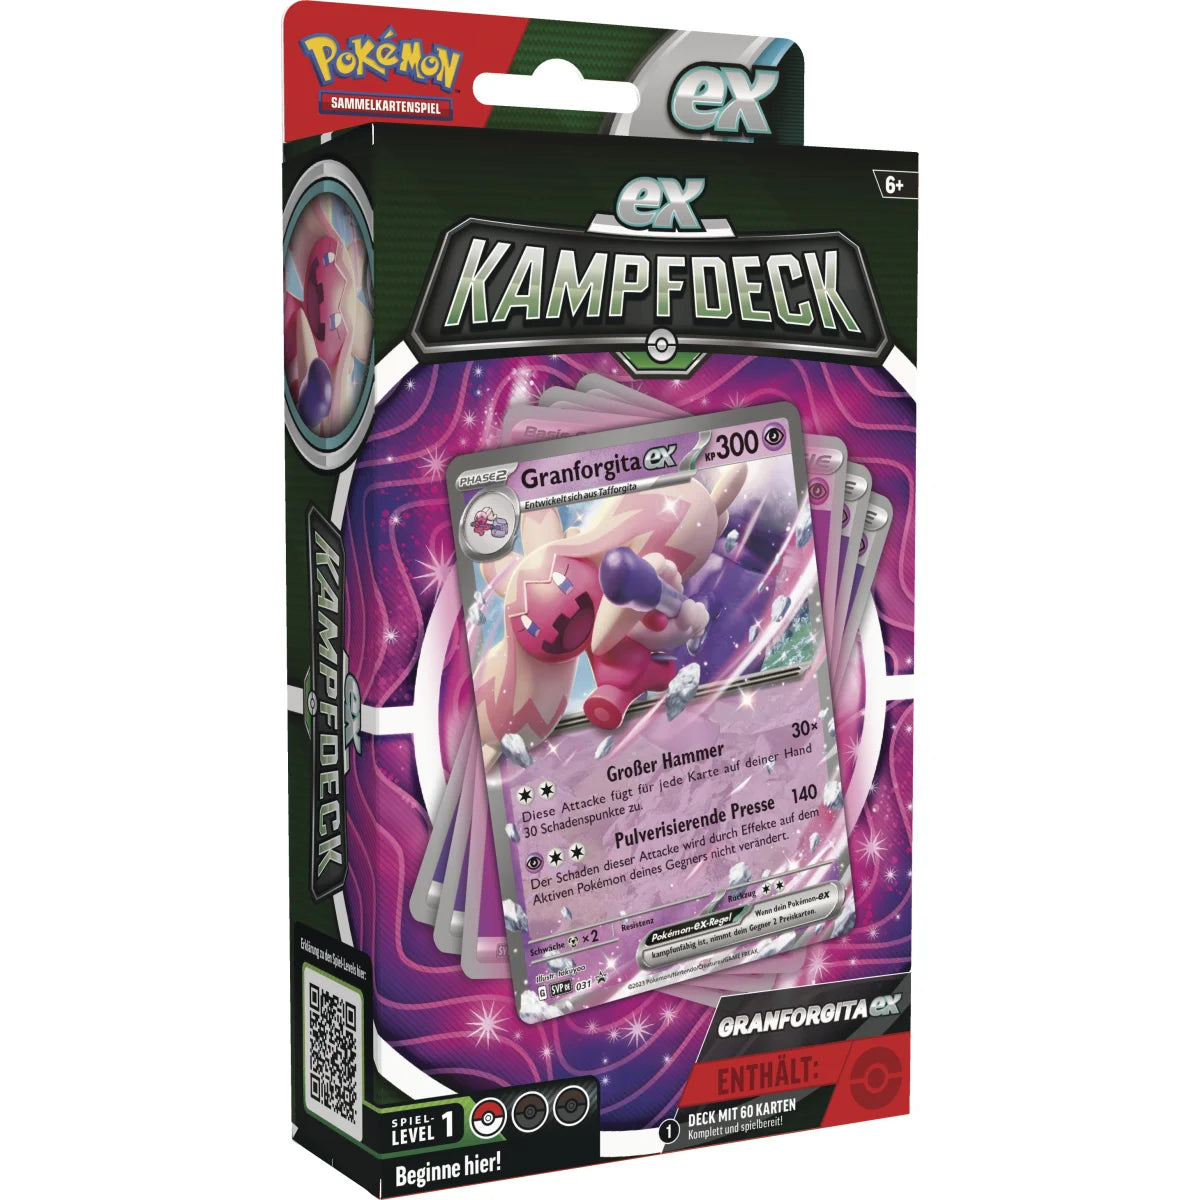 Pokémon - EX-Kampfdeck - Granforgita ex - DE